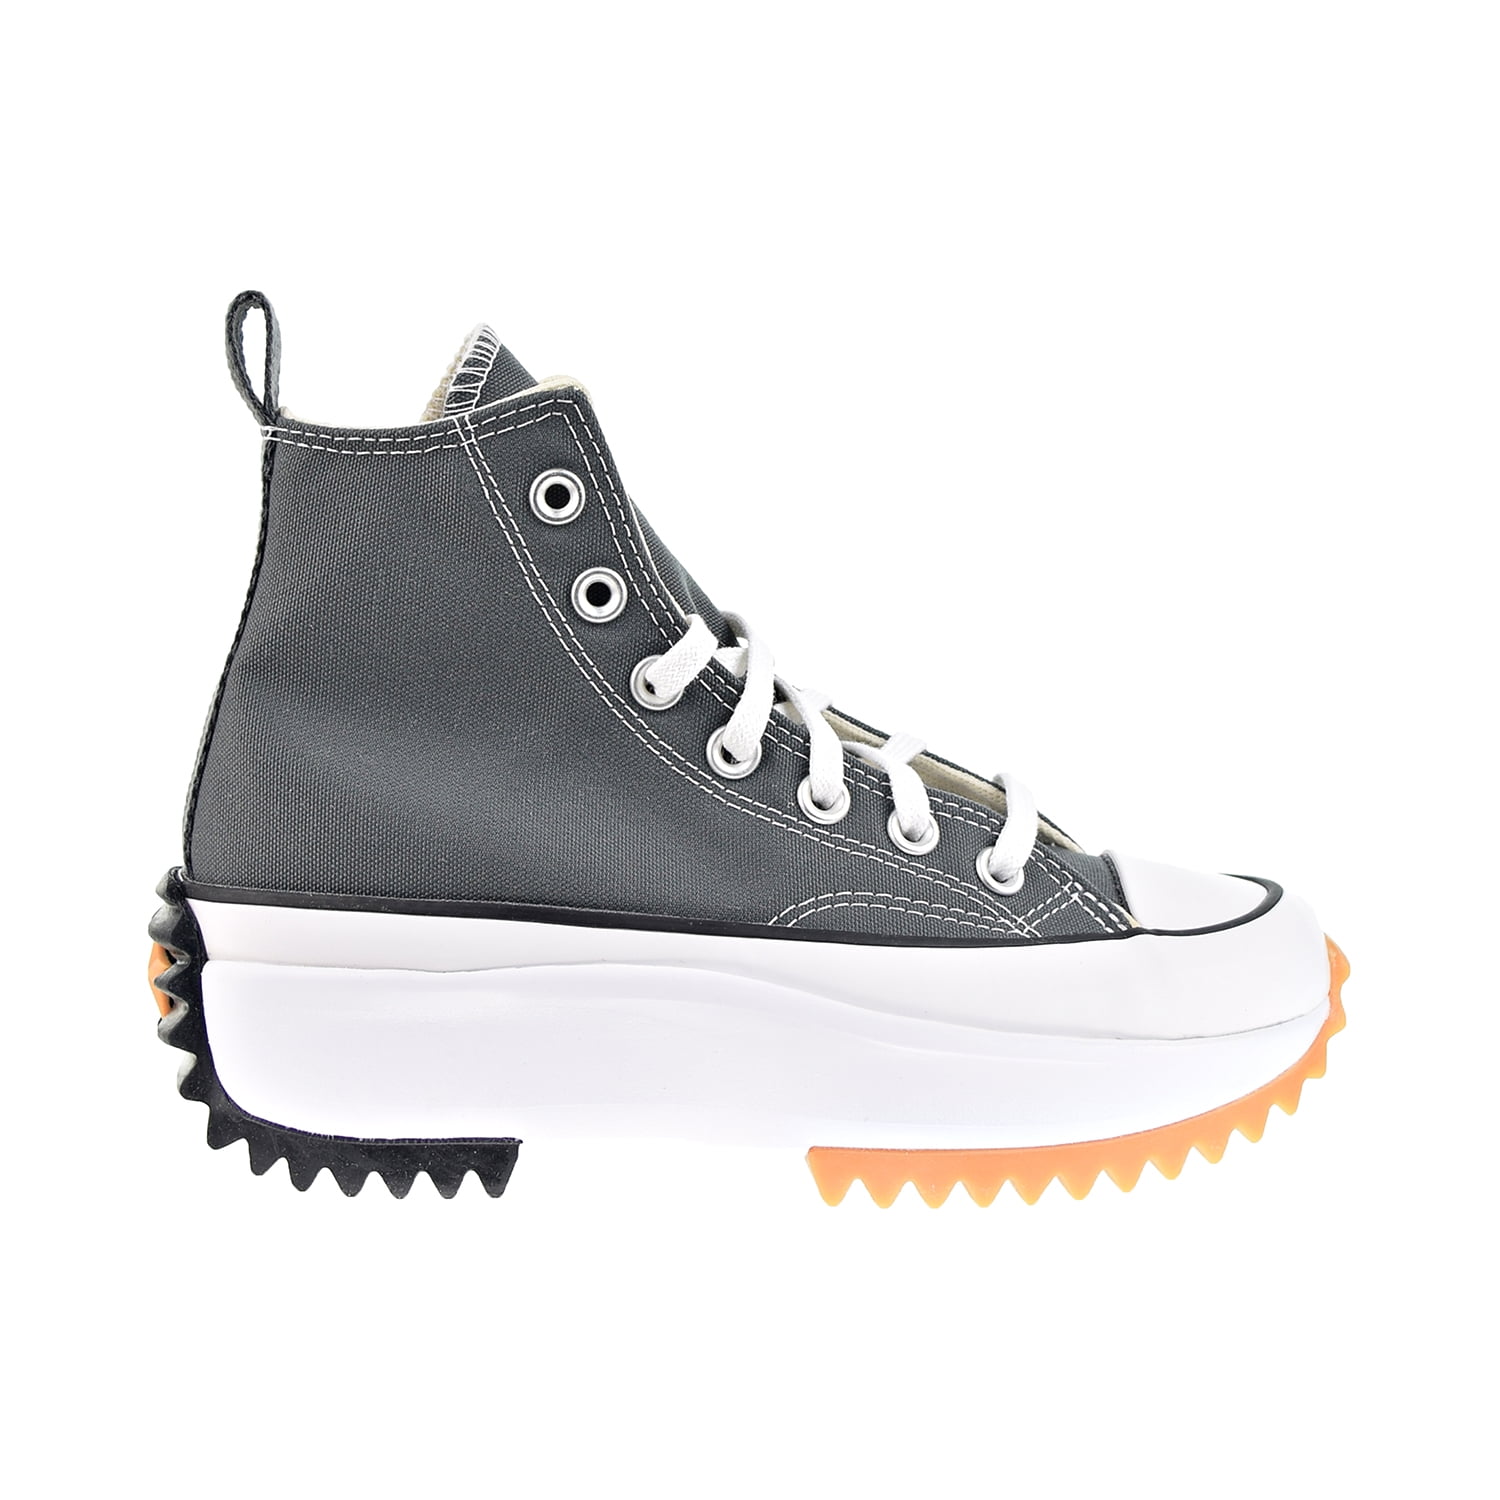 Arrepentimiento invención depositar Converse Run Star Hike Platform Men's Shoes Grey-White a03703c - Walmart.com